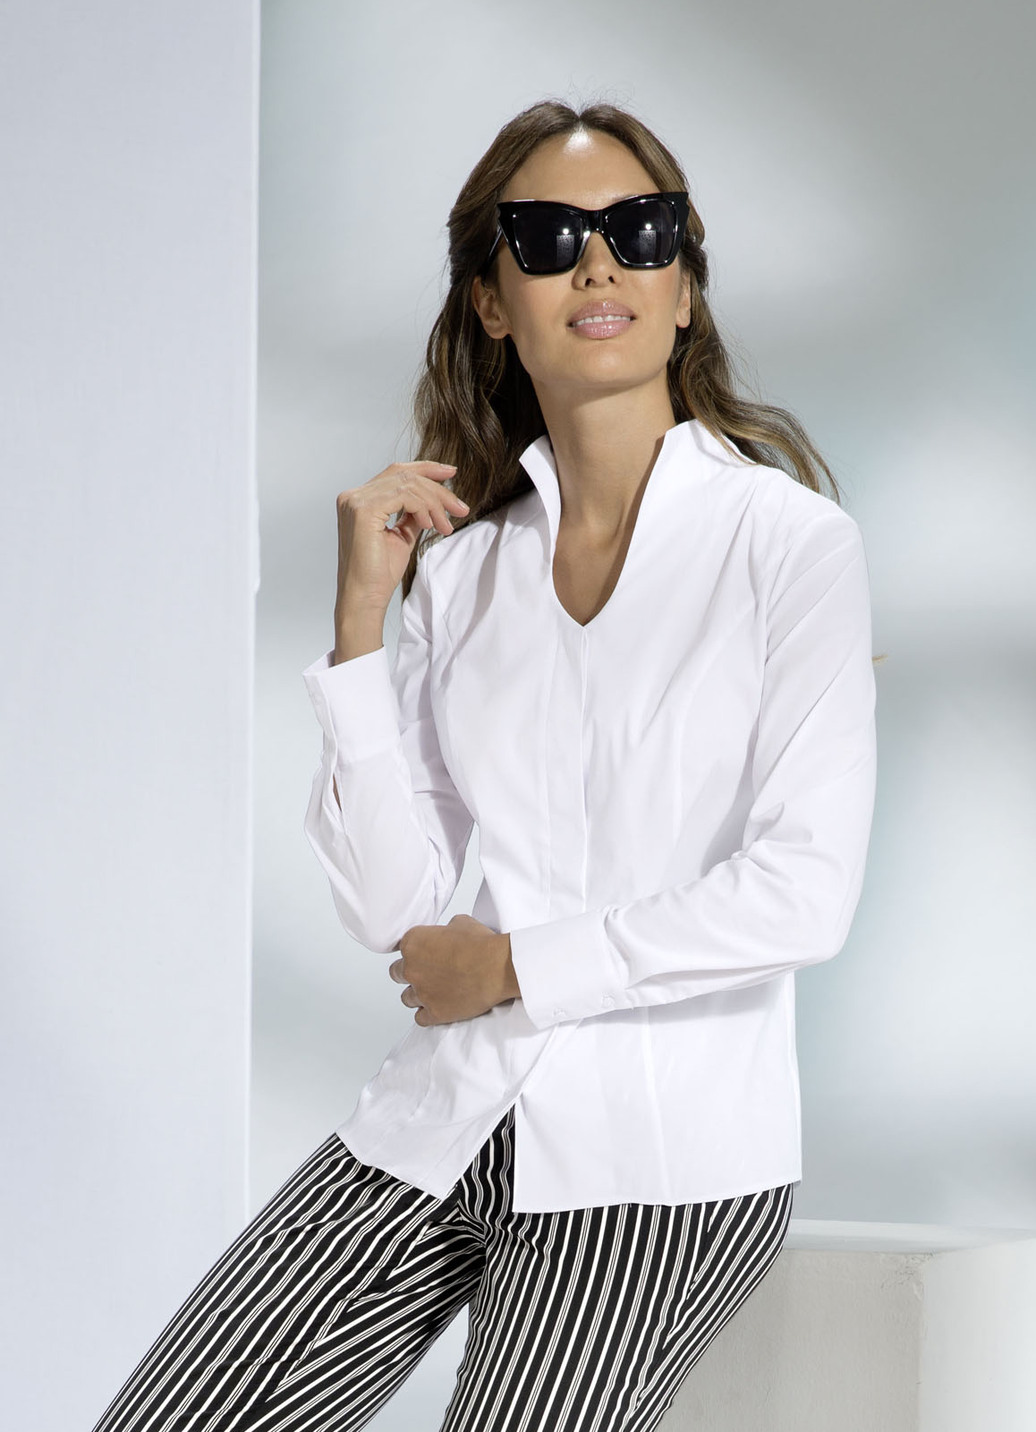 Blusen von BADER für Frauen günstig online kaufen bei fashn.de